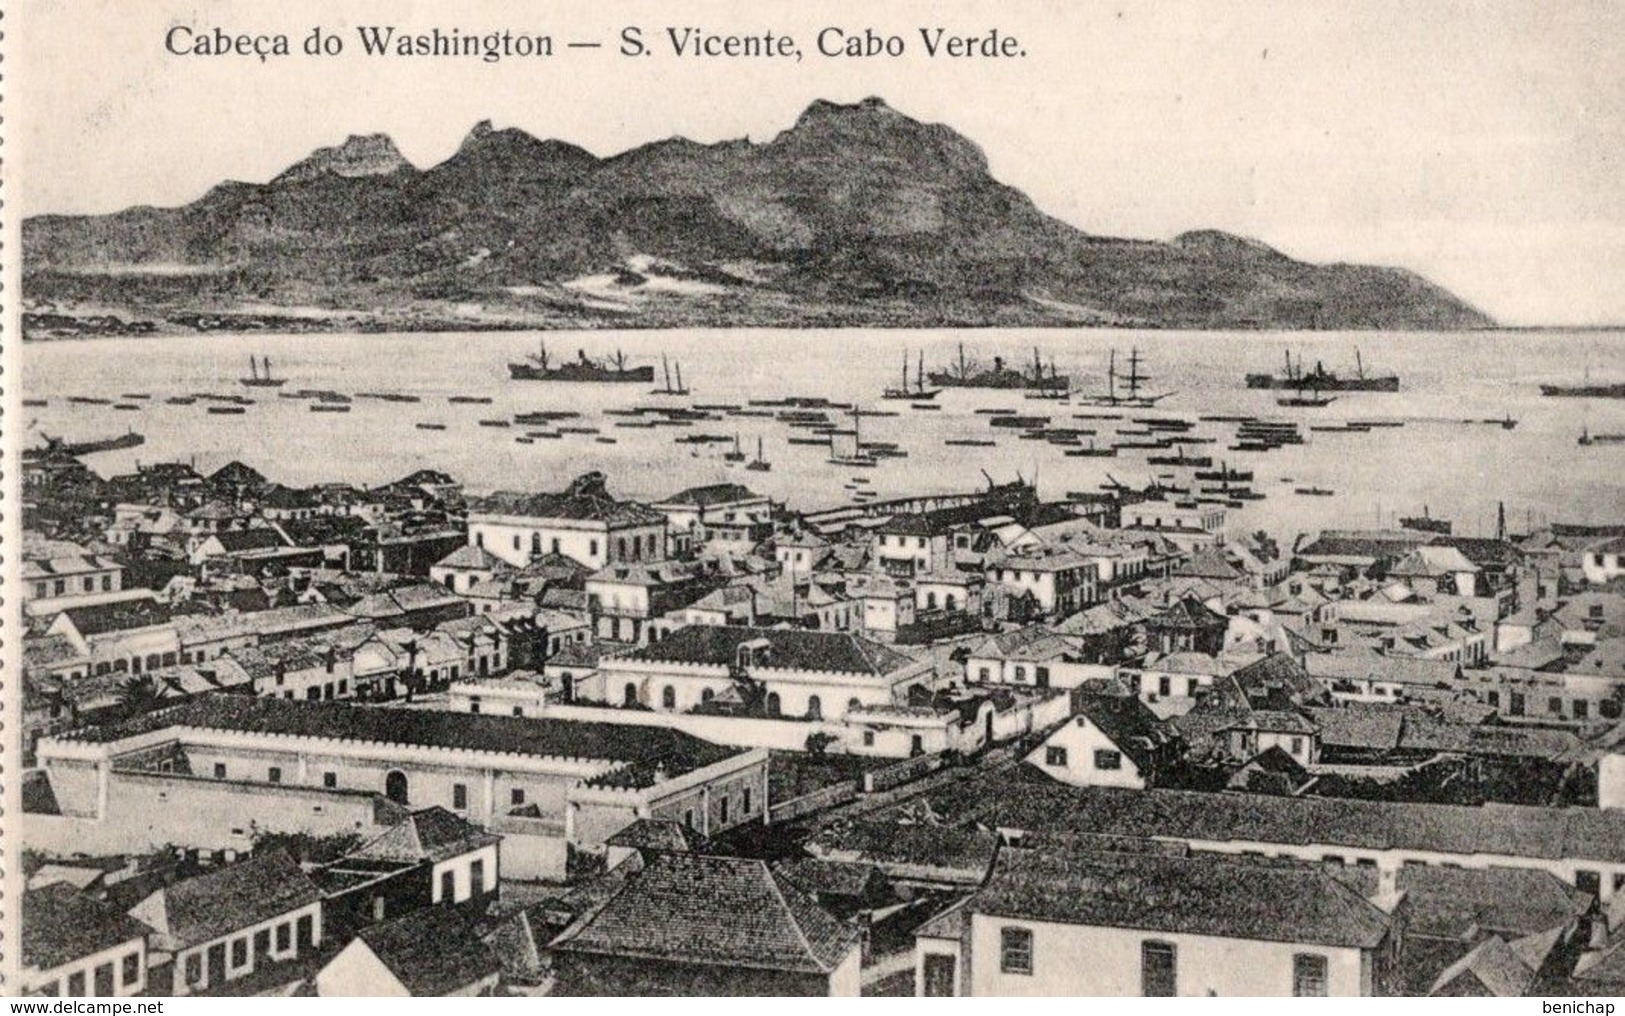 CPA CAP VERT - CABECA DO WASHINGTON - S. VICENTE - CABO VERDE - NEUVE - NON CIRCULEE - Kaapverdische Eilanden